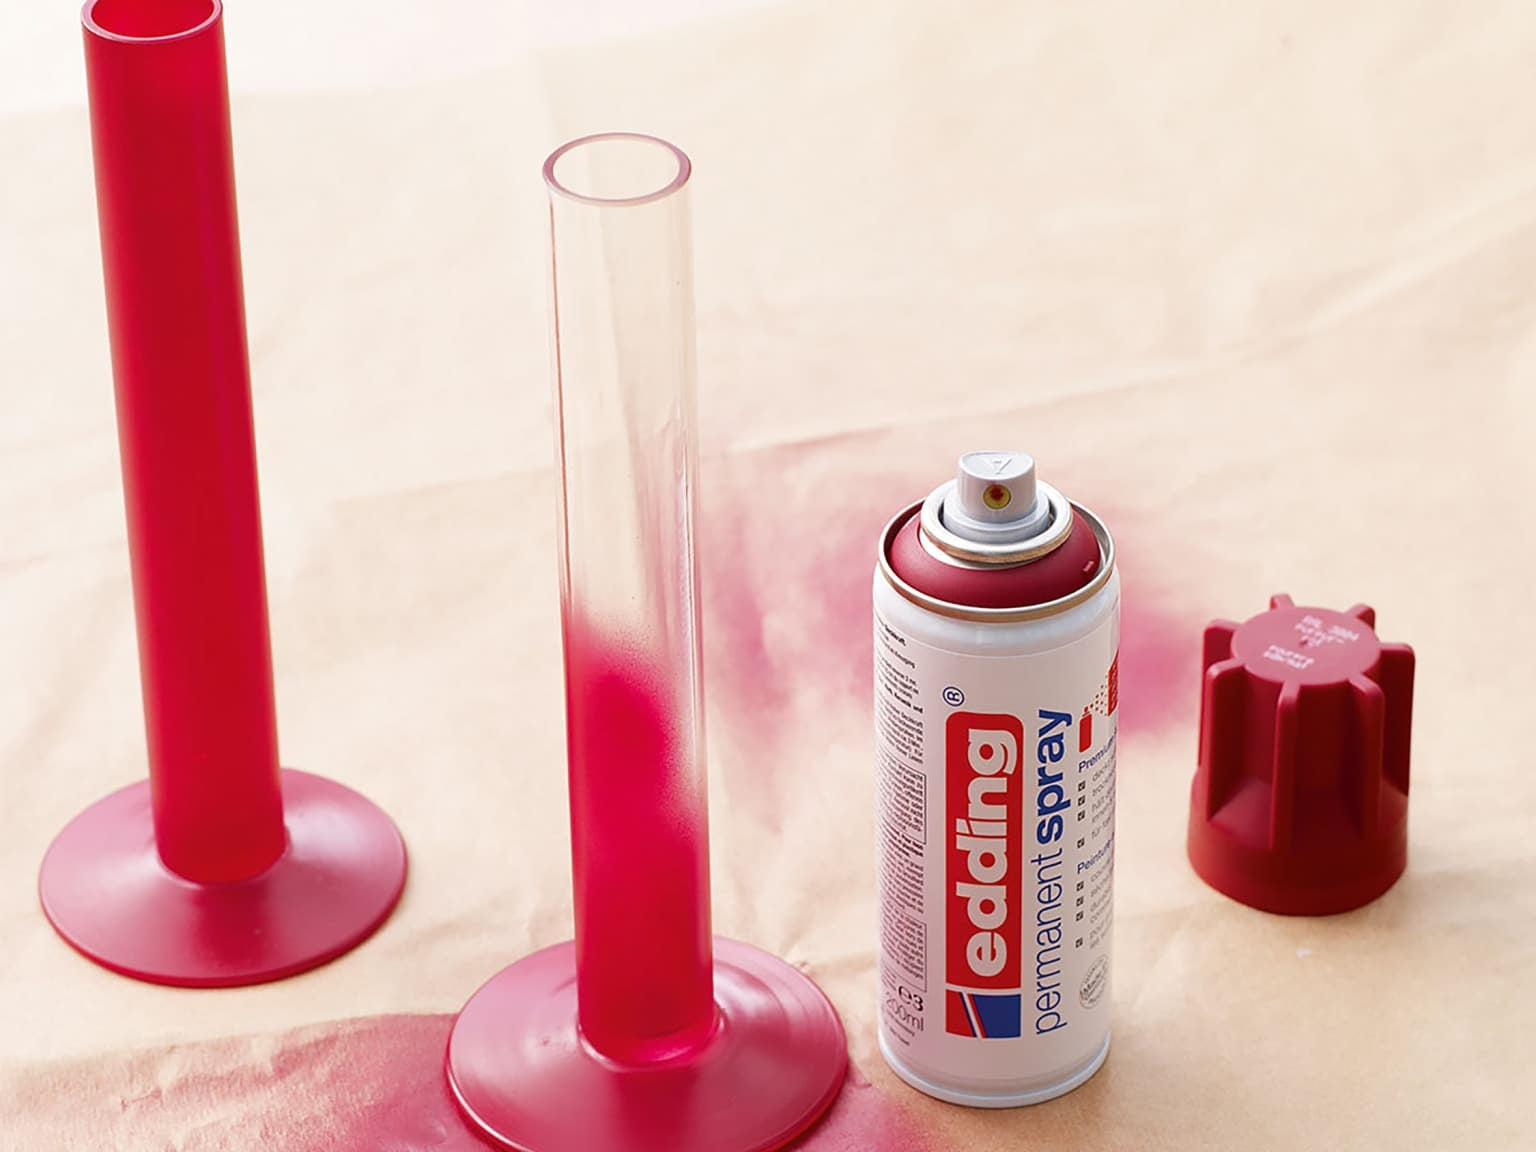 Eine Spraydose edding 5200 Permanentspray Acryllack Neon & Kräftige Farben liegt auf der Seite neben zwei großen roten Kerzenständern auf einer hellen Fläche.